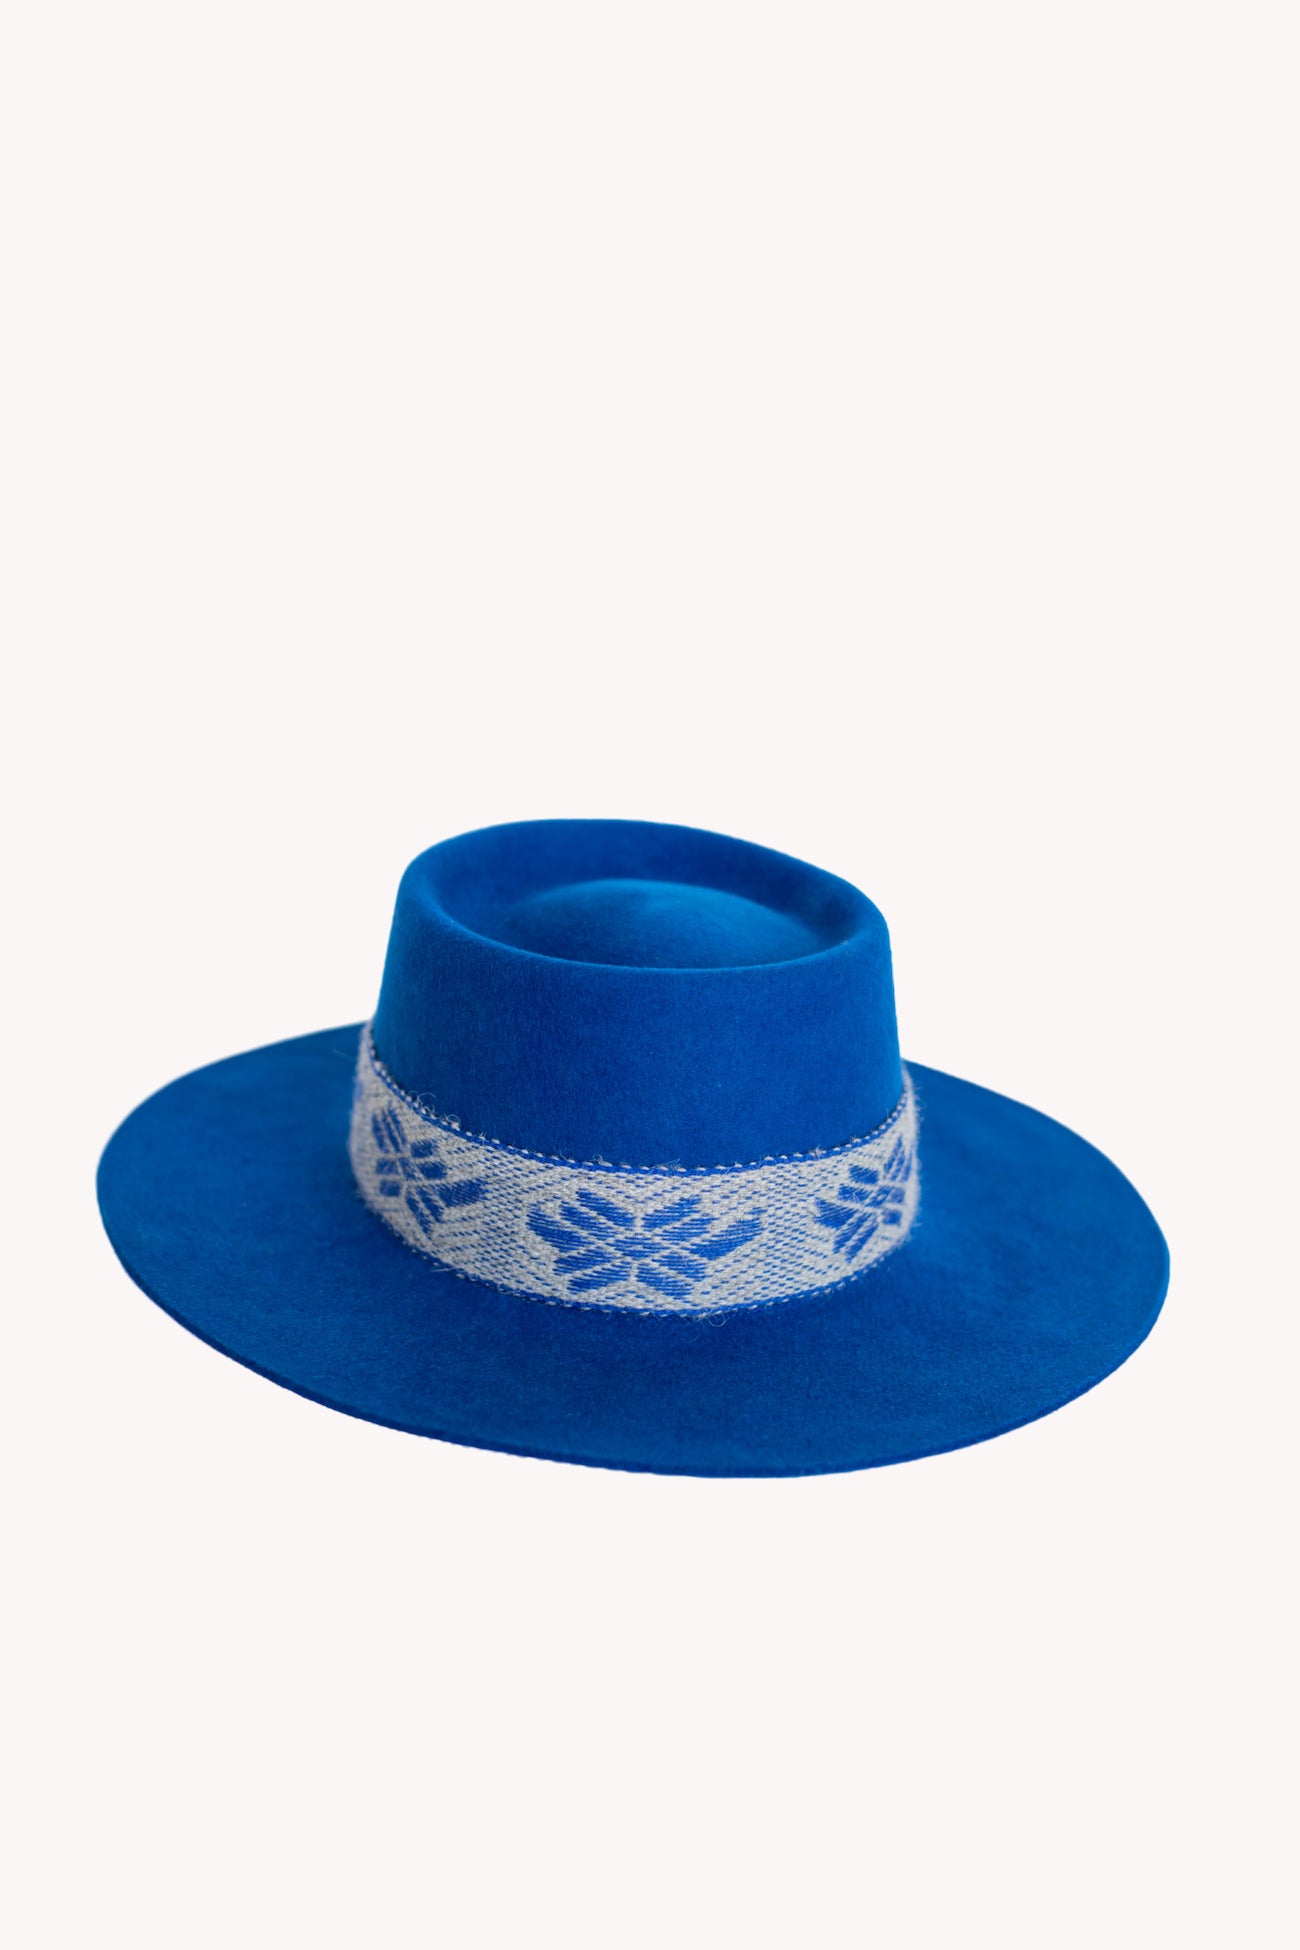 Blue Bucket style alpaca wool hat